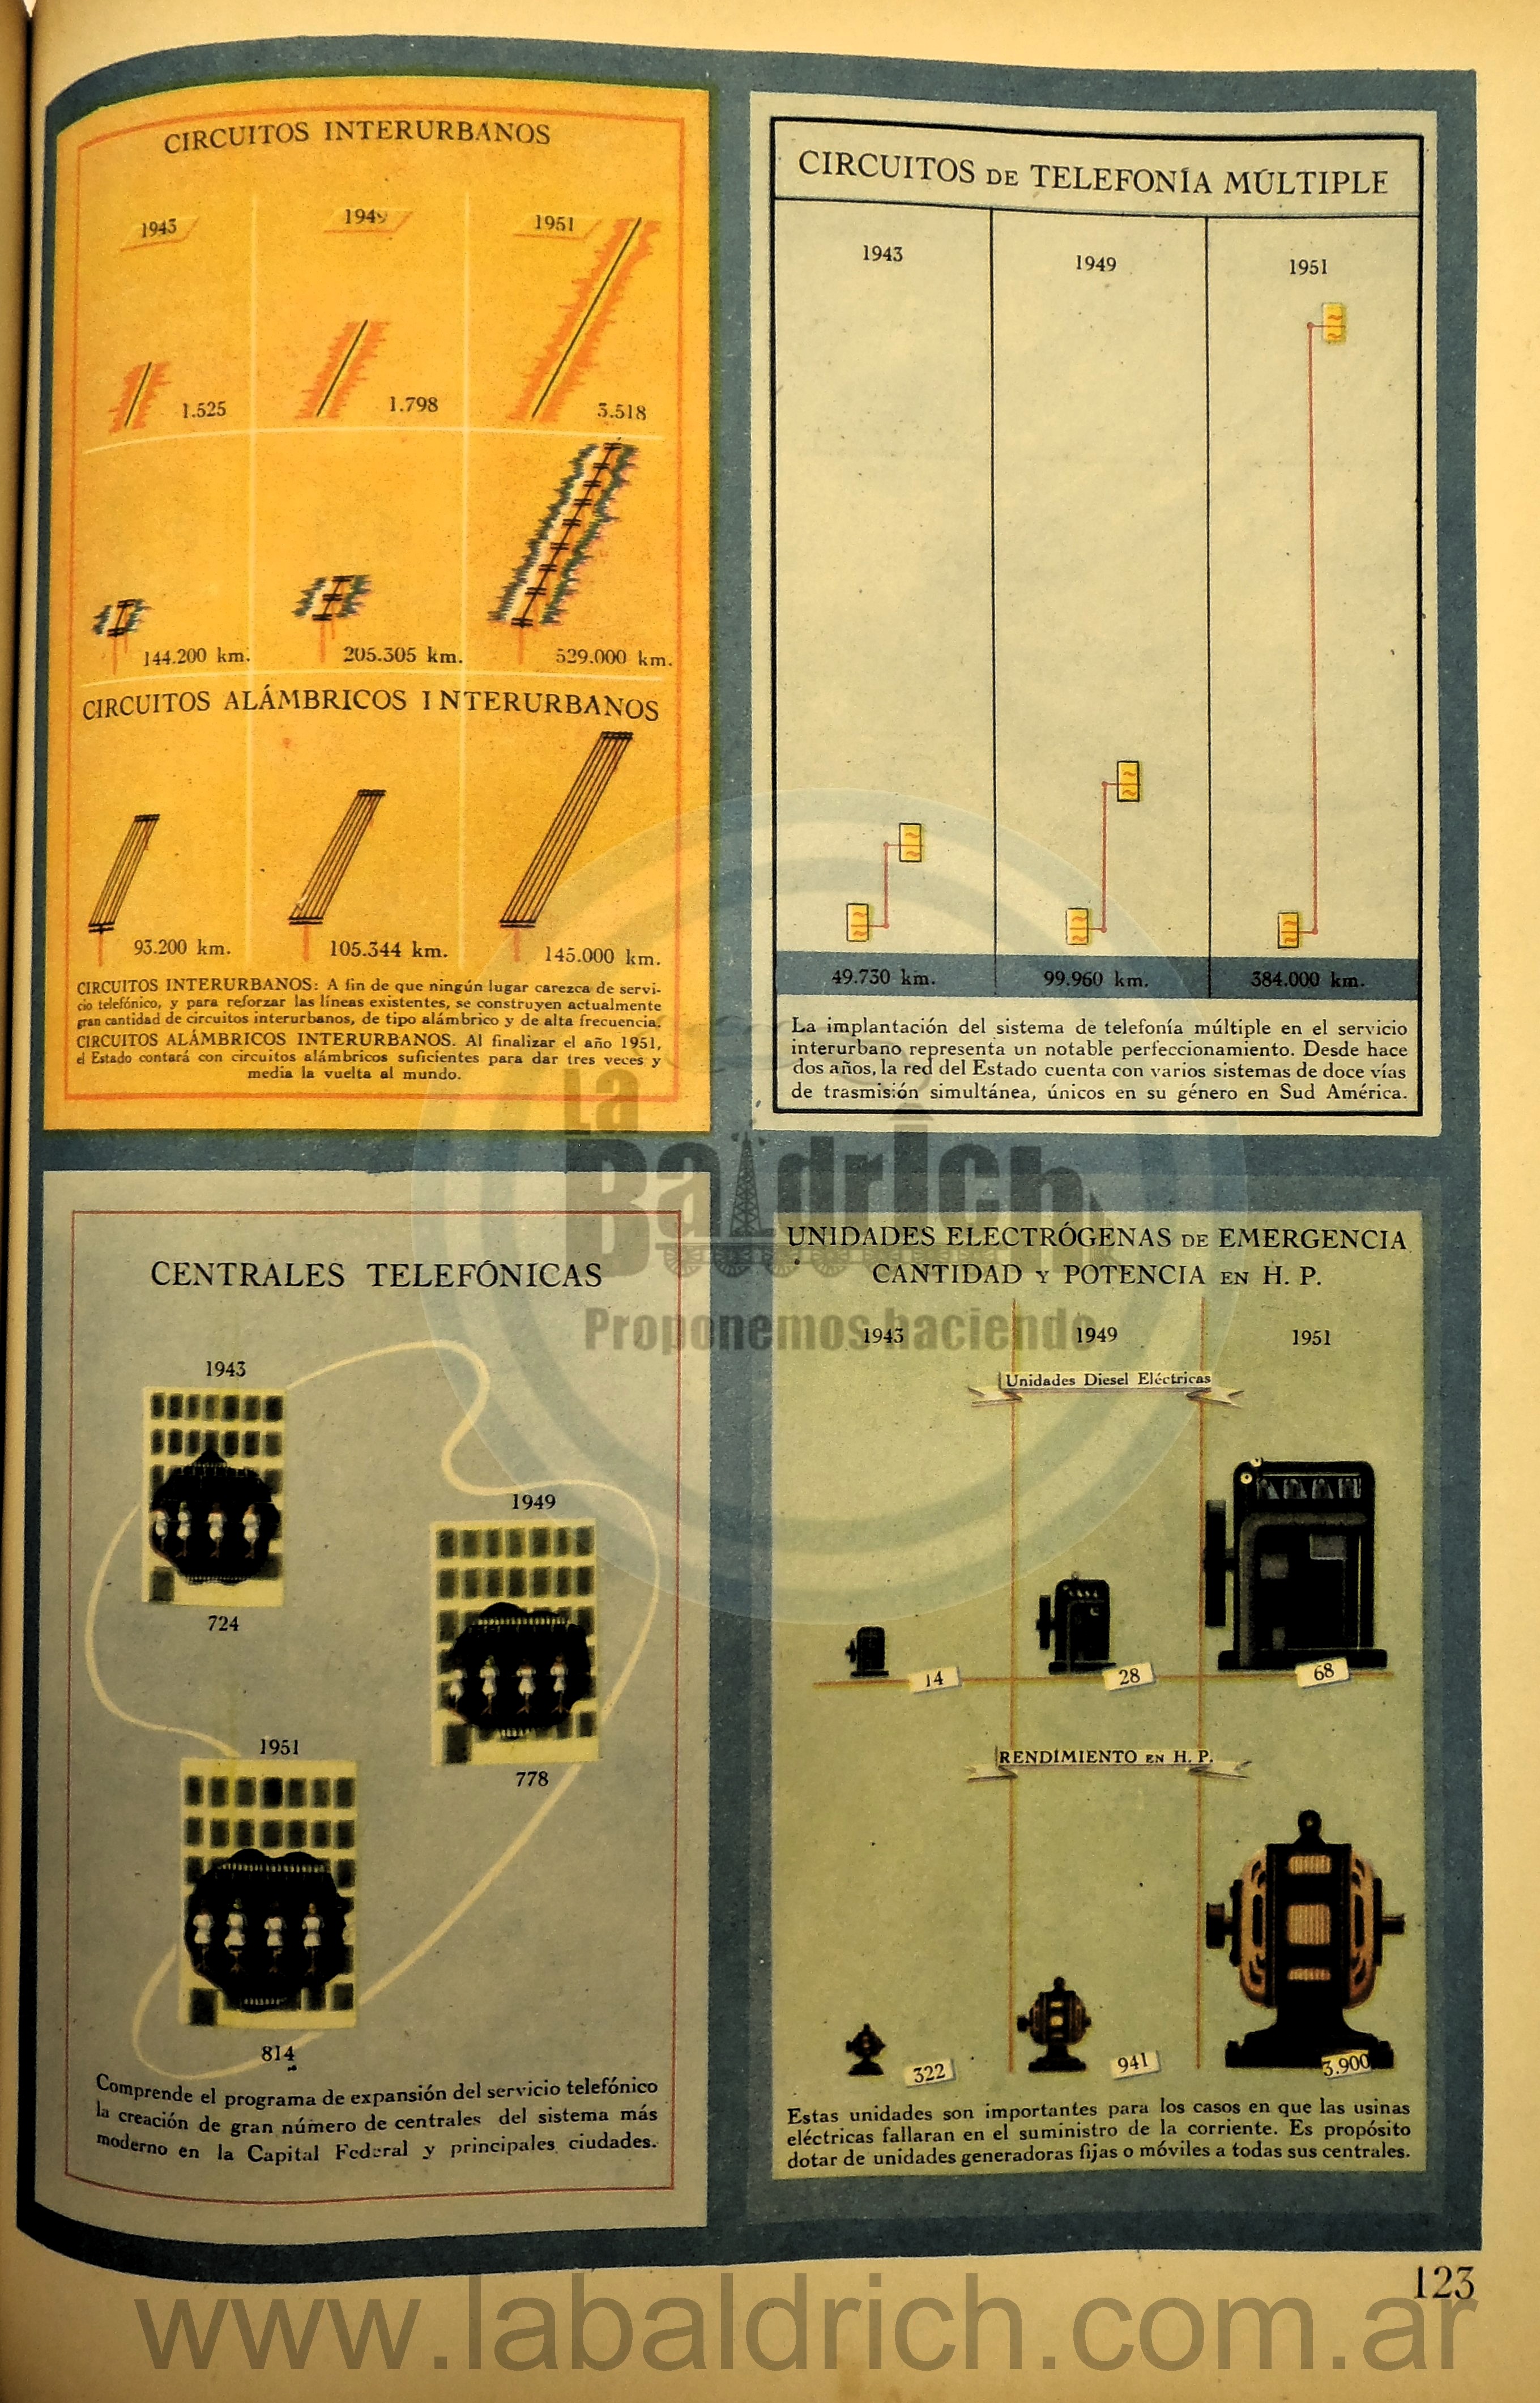 Nacionalización de los servicios telefónicos Perón 1948 – 3